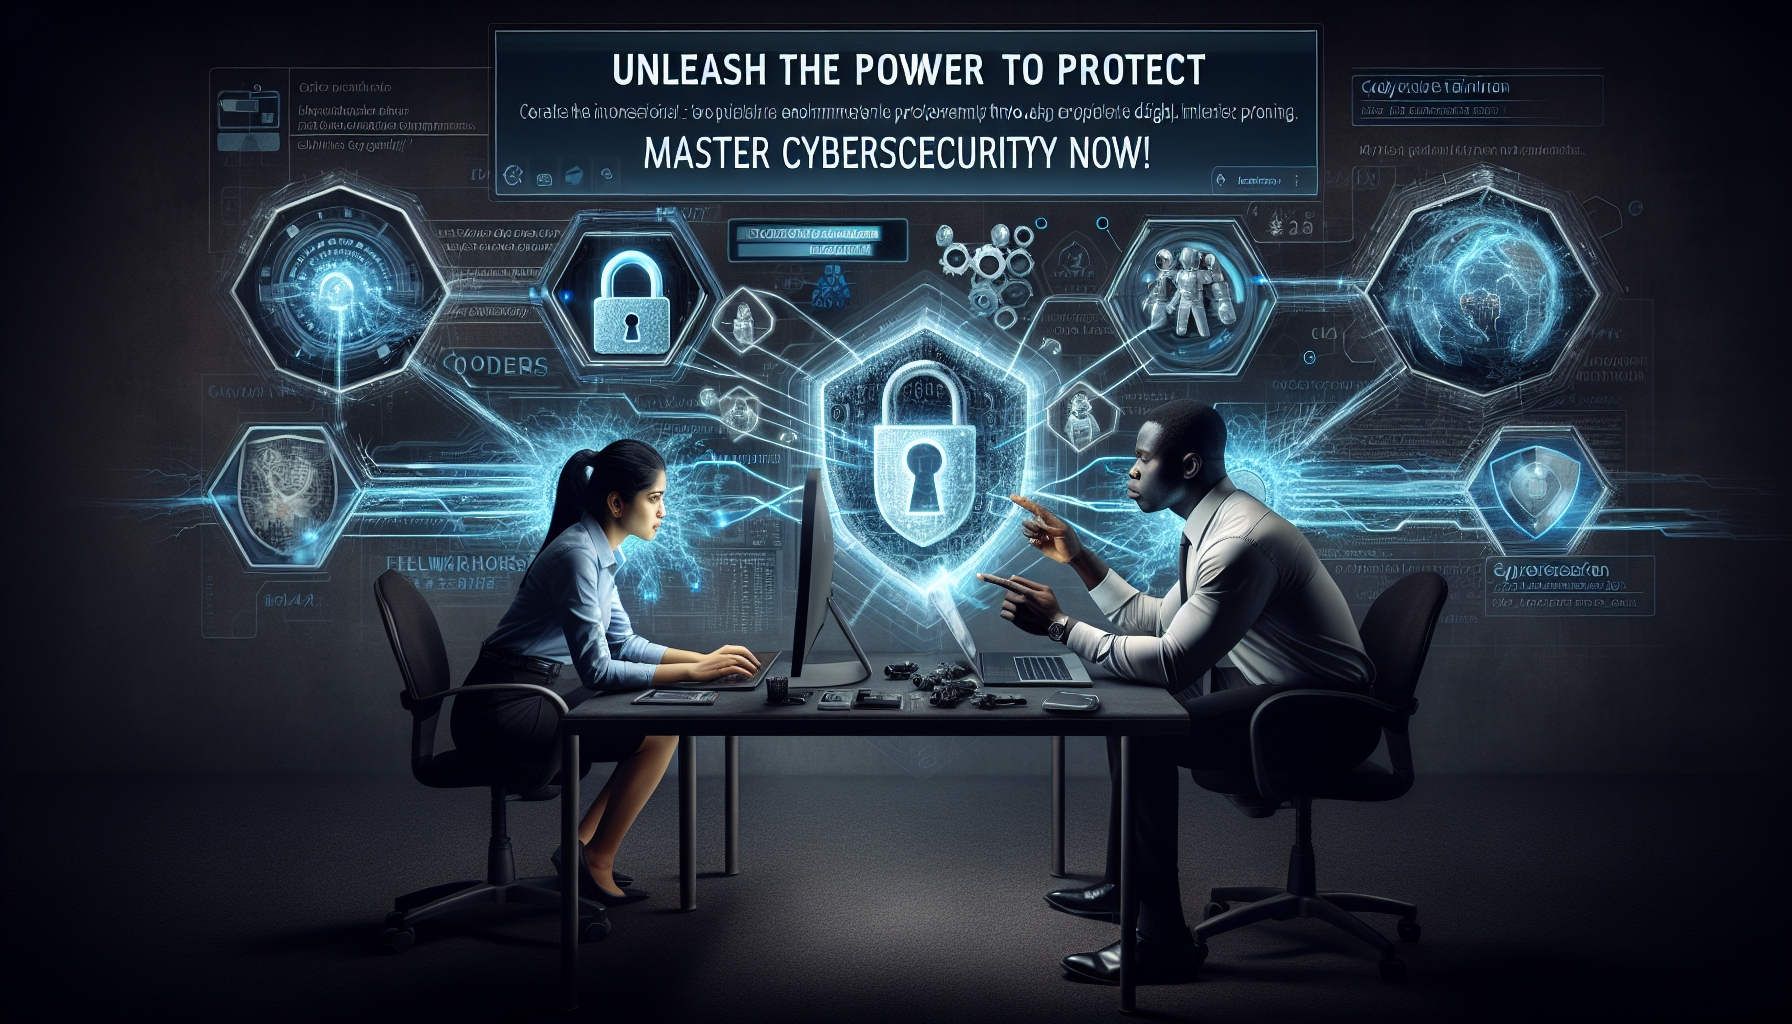 découvrez les meilleures méthodes de protection en cybersécurité lors de notre formation sur la cybersécurité.